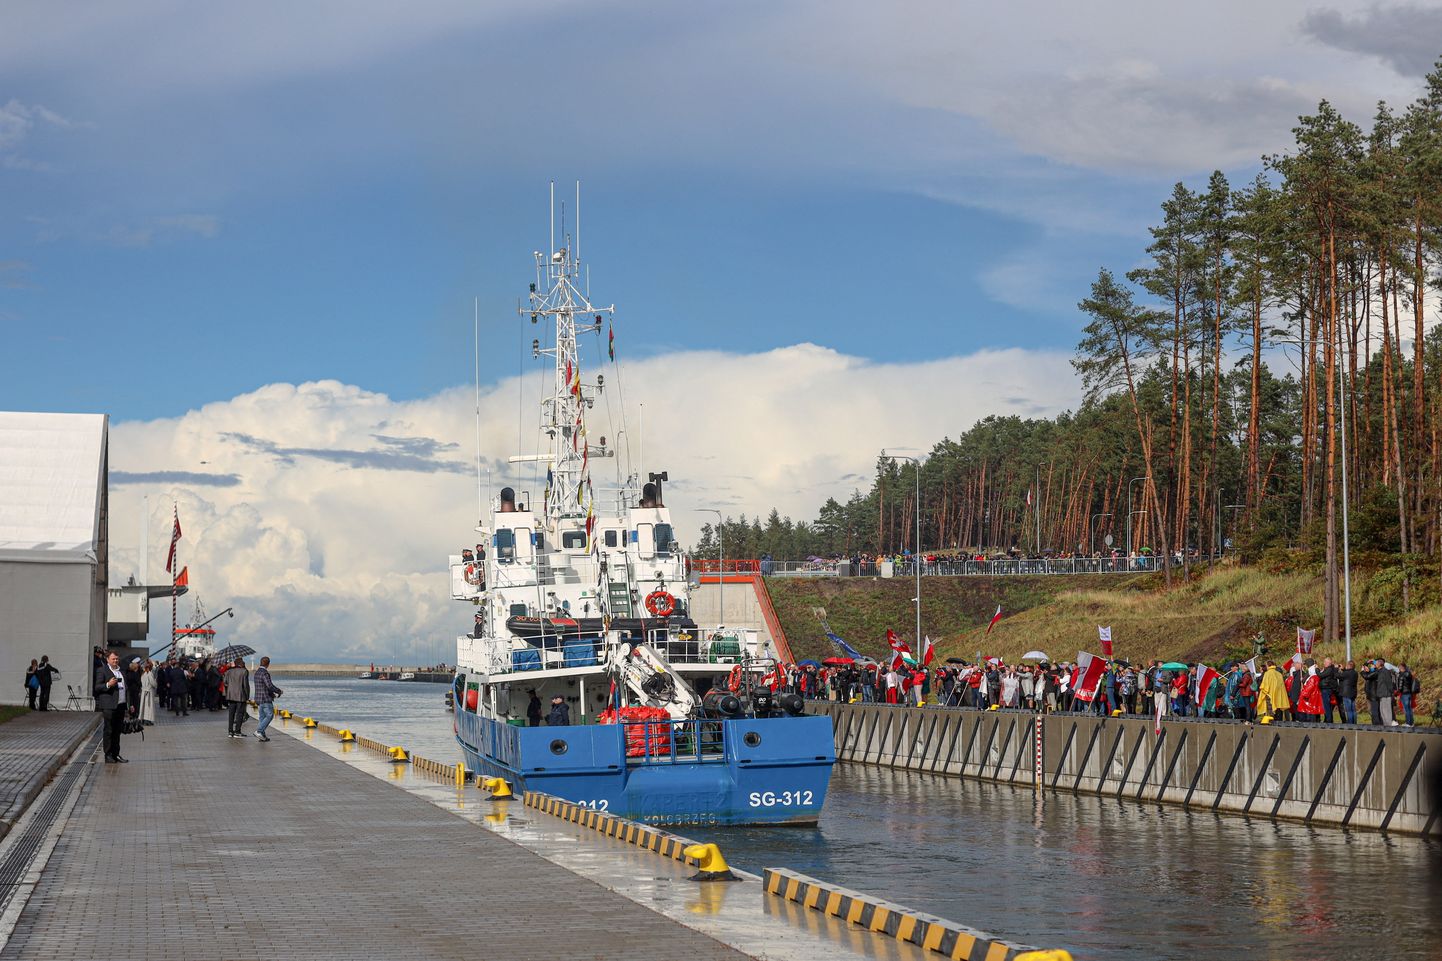 Poola avas uue laevatee Visla laguuni ja Läänemere vahel.